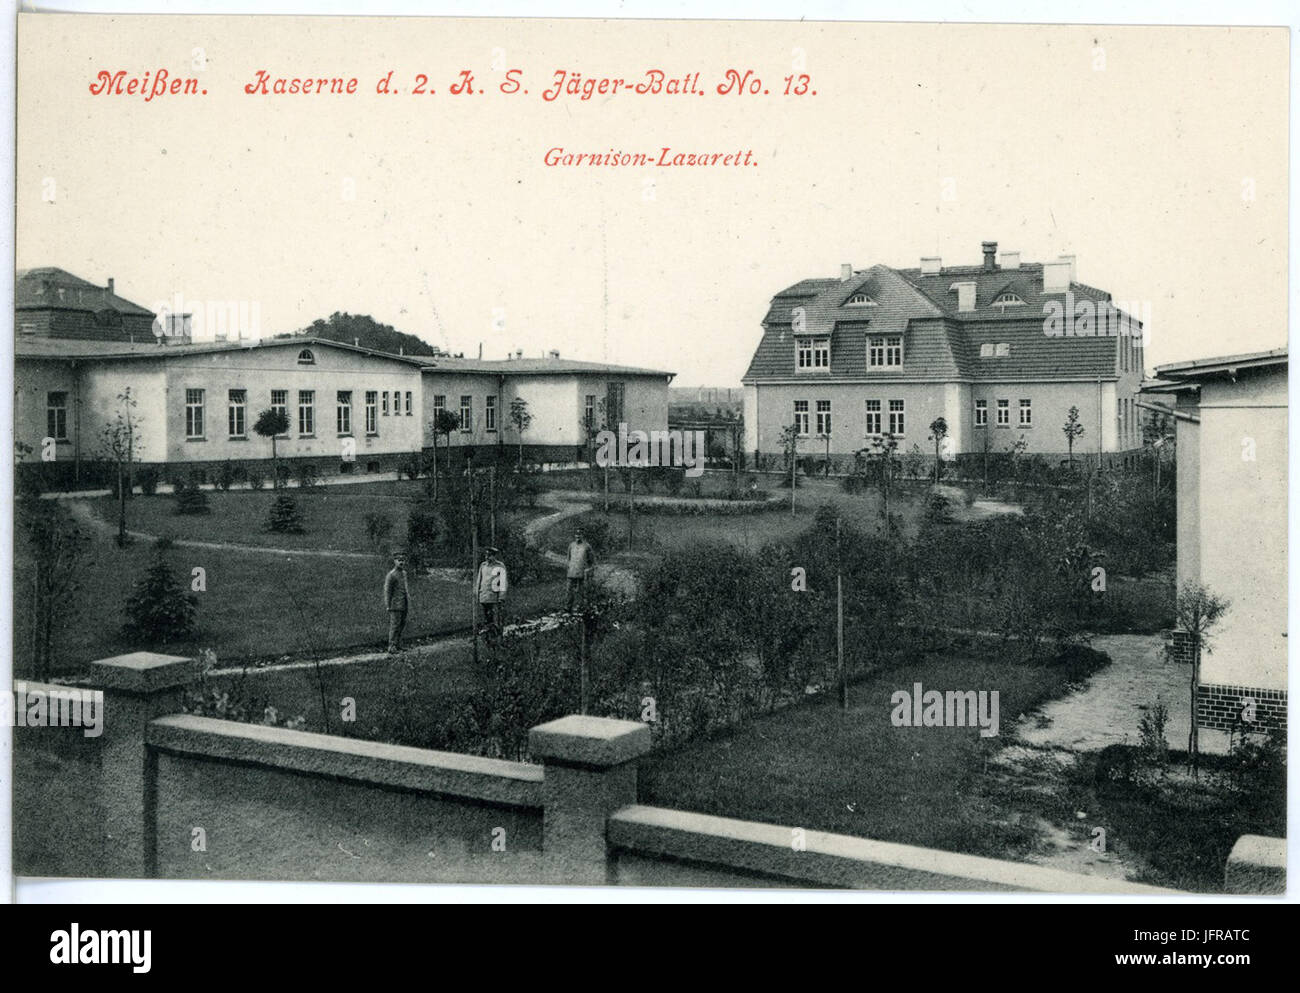 18239-Meißen-1914-Kaserne des 2. Königlich Sächsischen Jäger-Bataillon Nr. 13 - Garnison-Lazarett-Brück & Sohn Kunstverlag Stock Photo